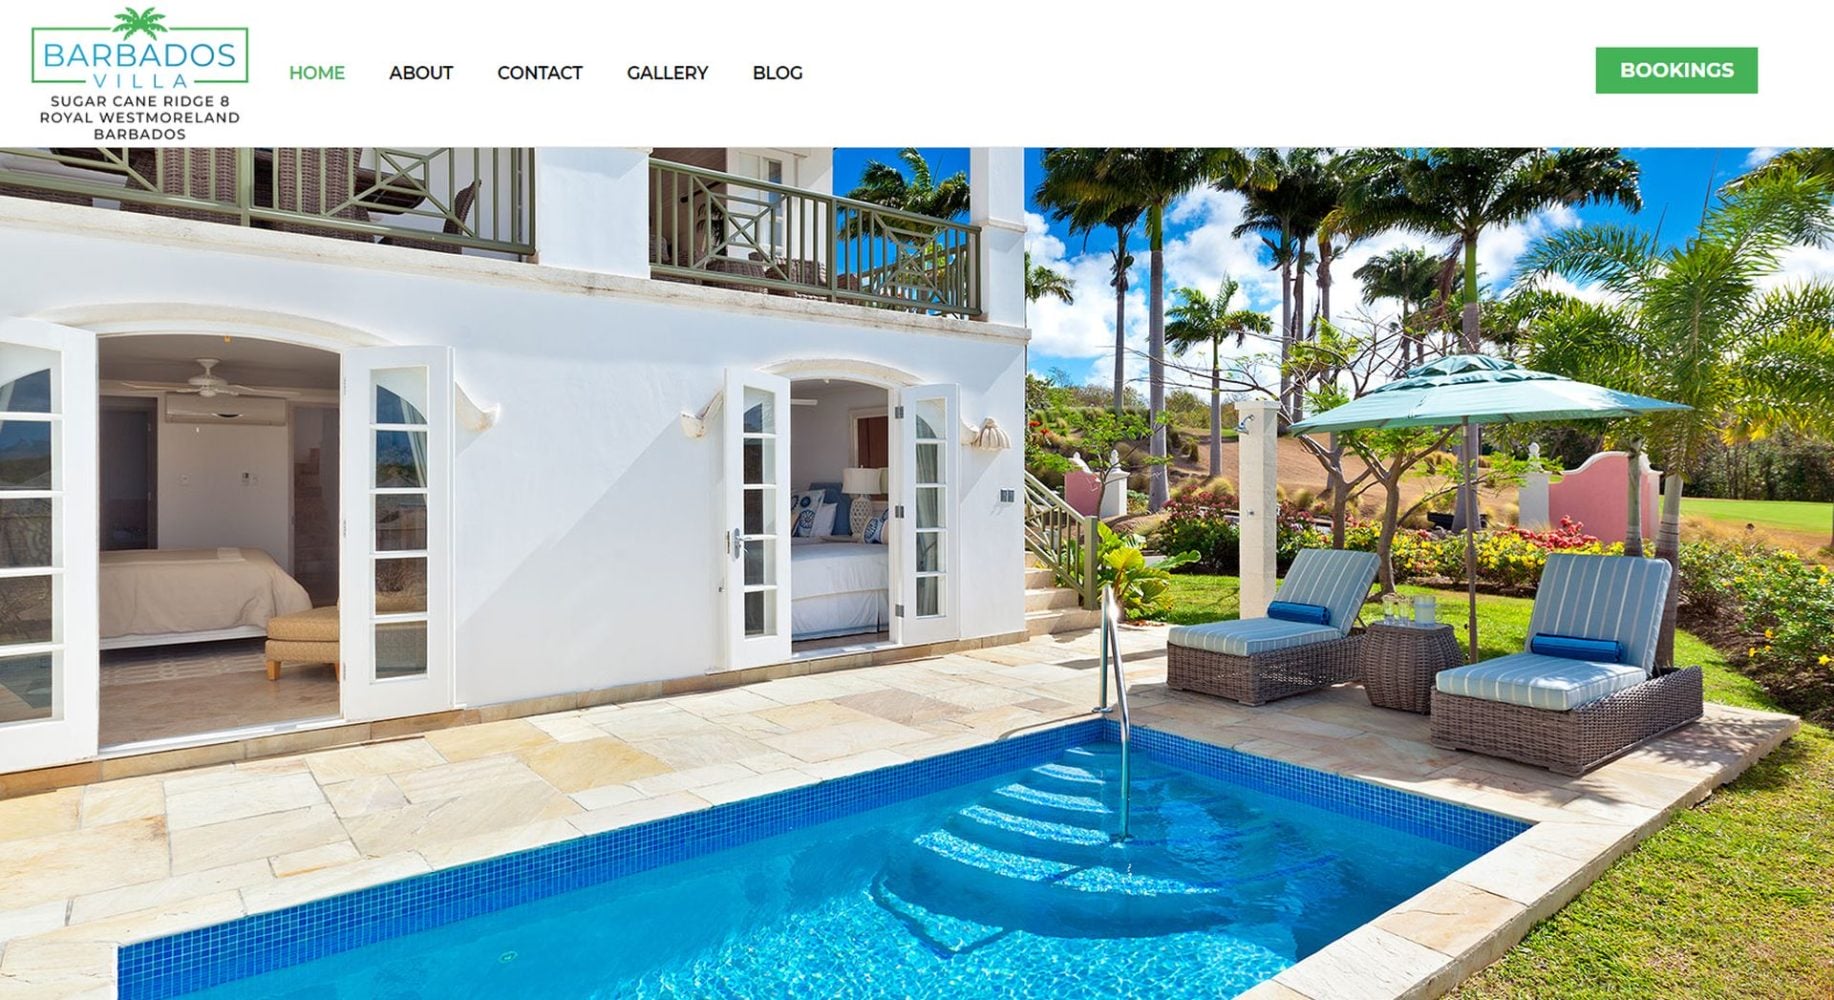 Barbados Villa Website Design Homepage